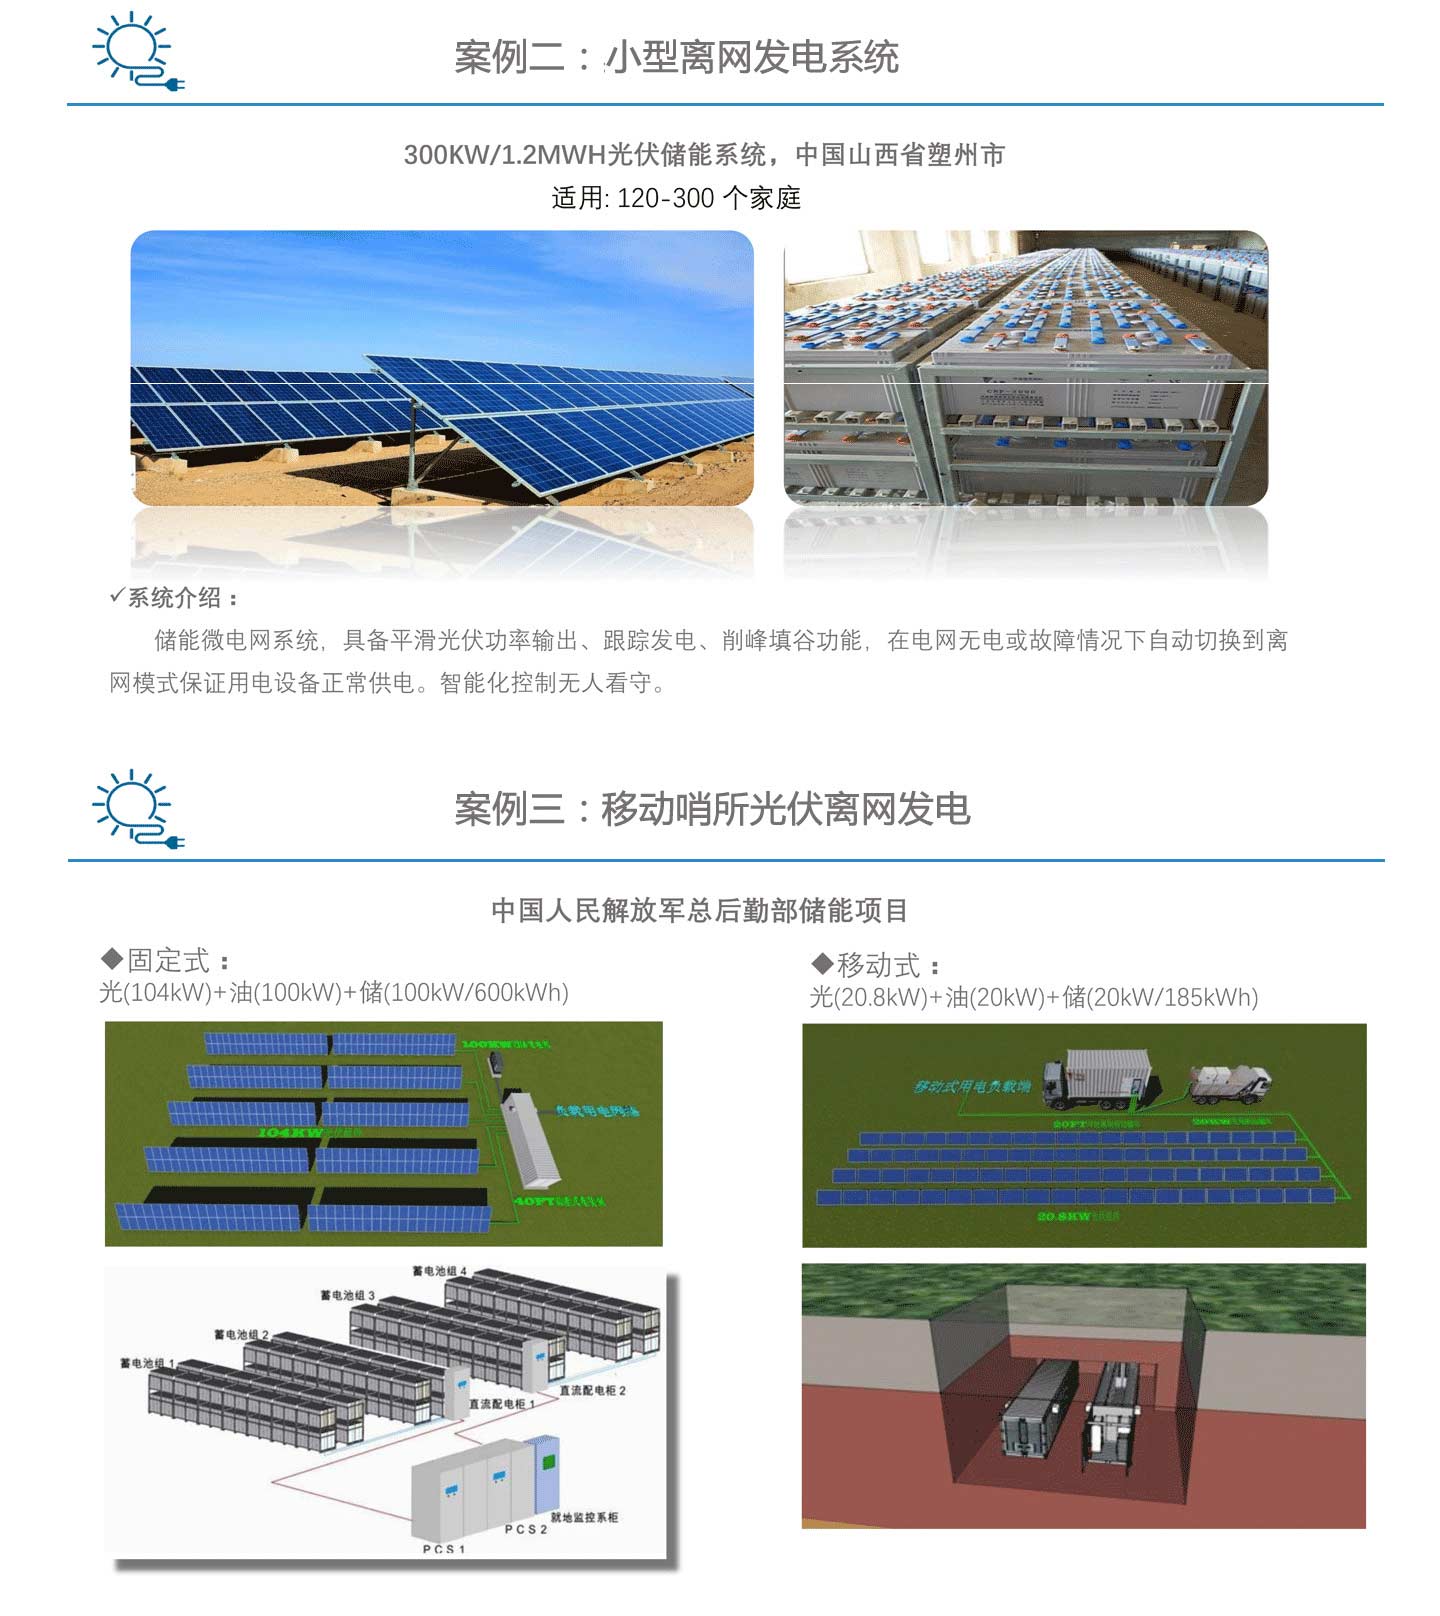 西安画风建筑工程有限公司 光伏储能 太阳能发电